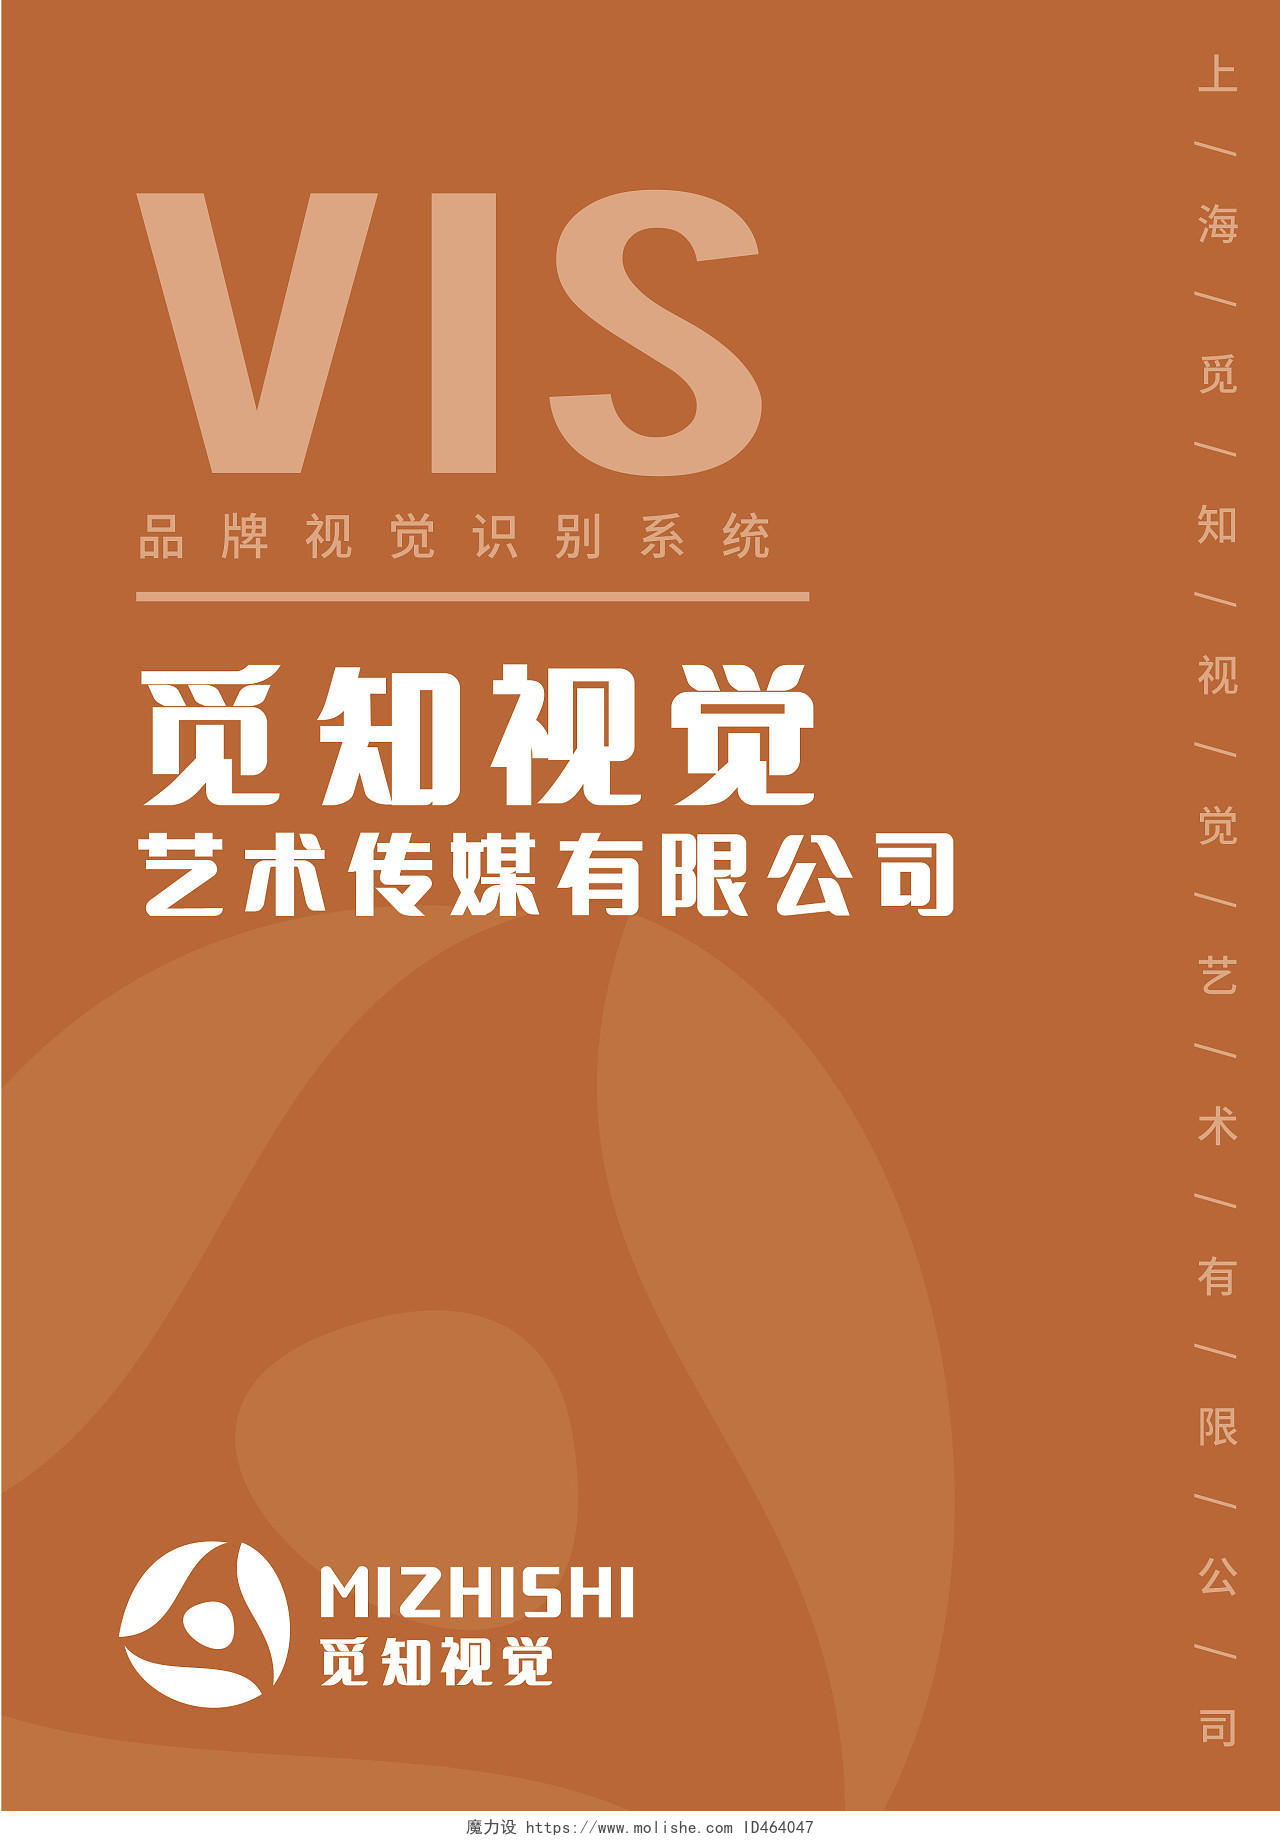 橘黄色VI手册公司企业品牌手册宣传册模板vis视觉识别系统手册